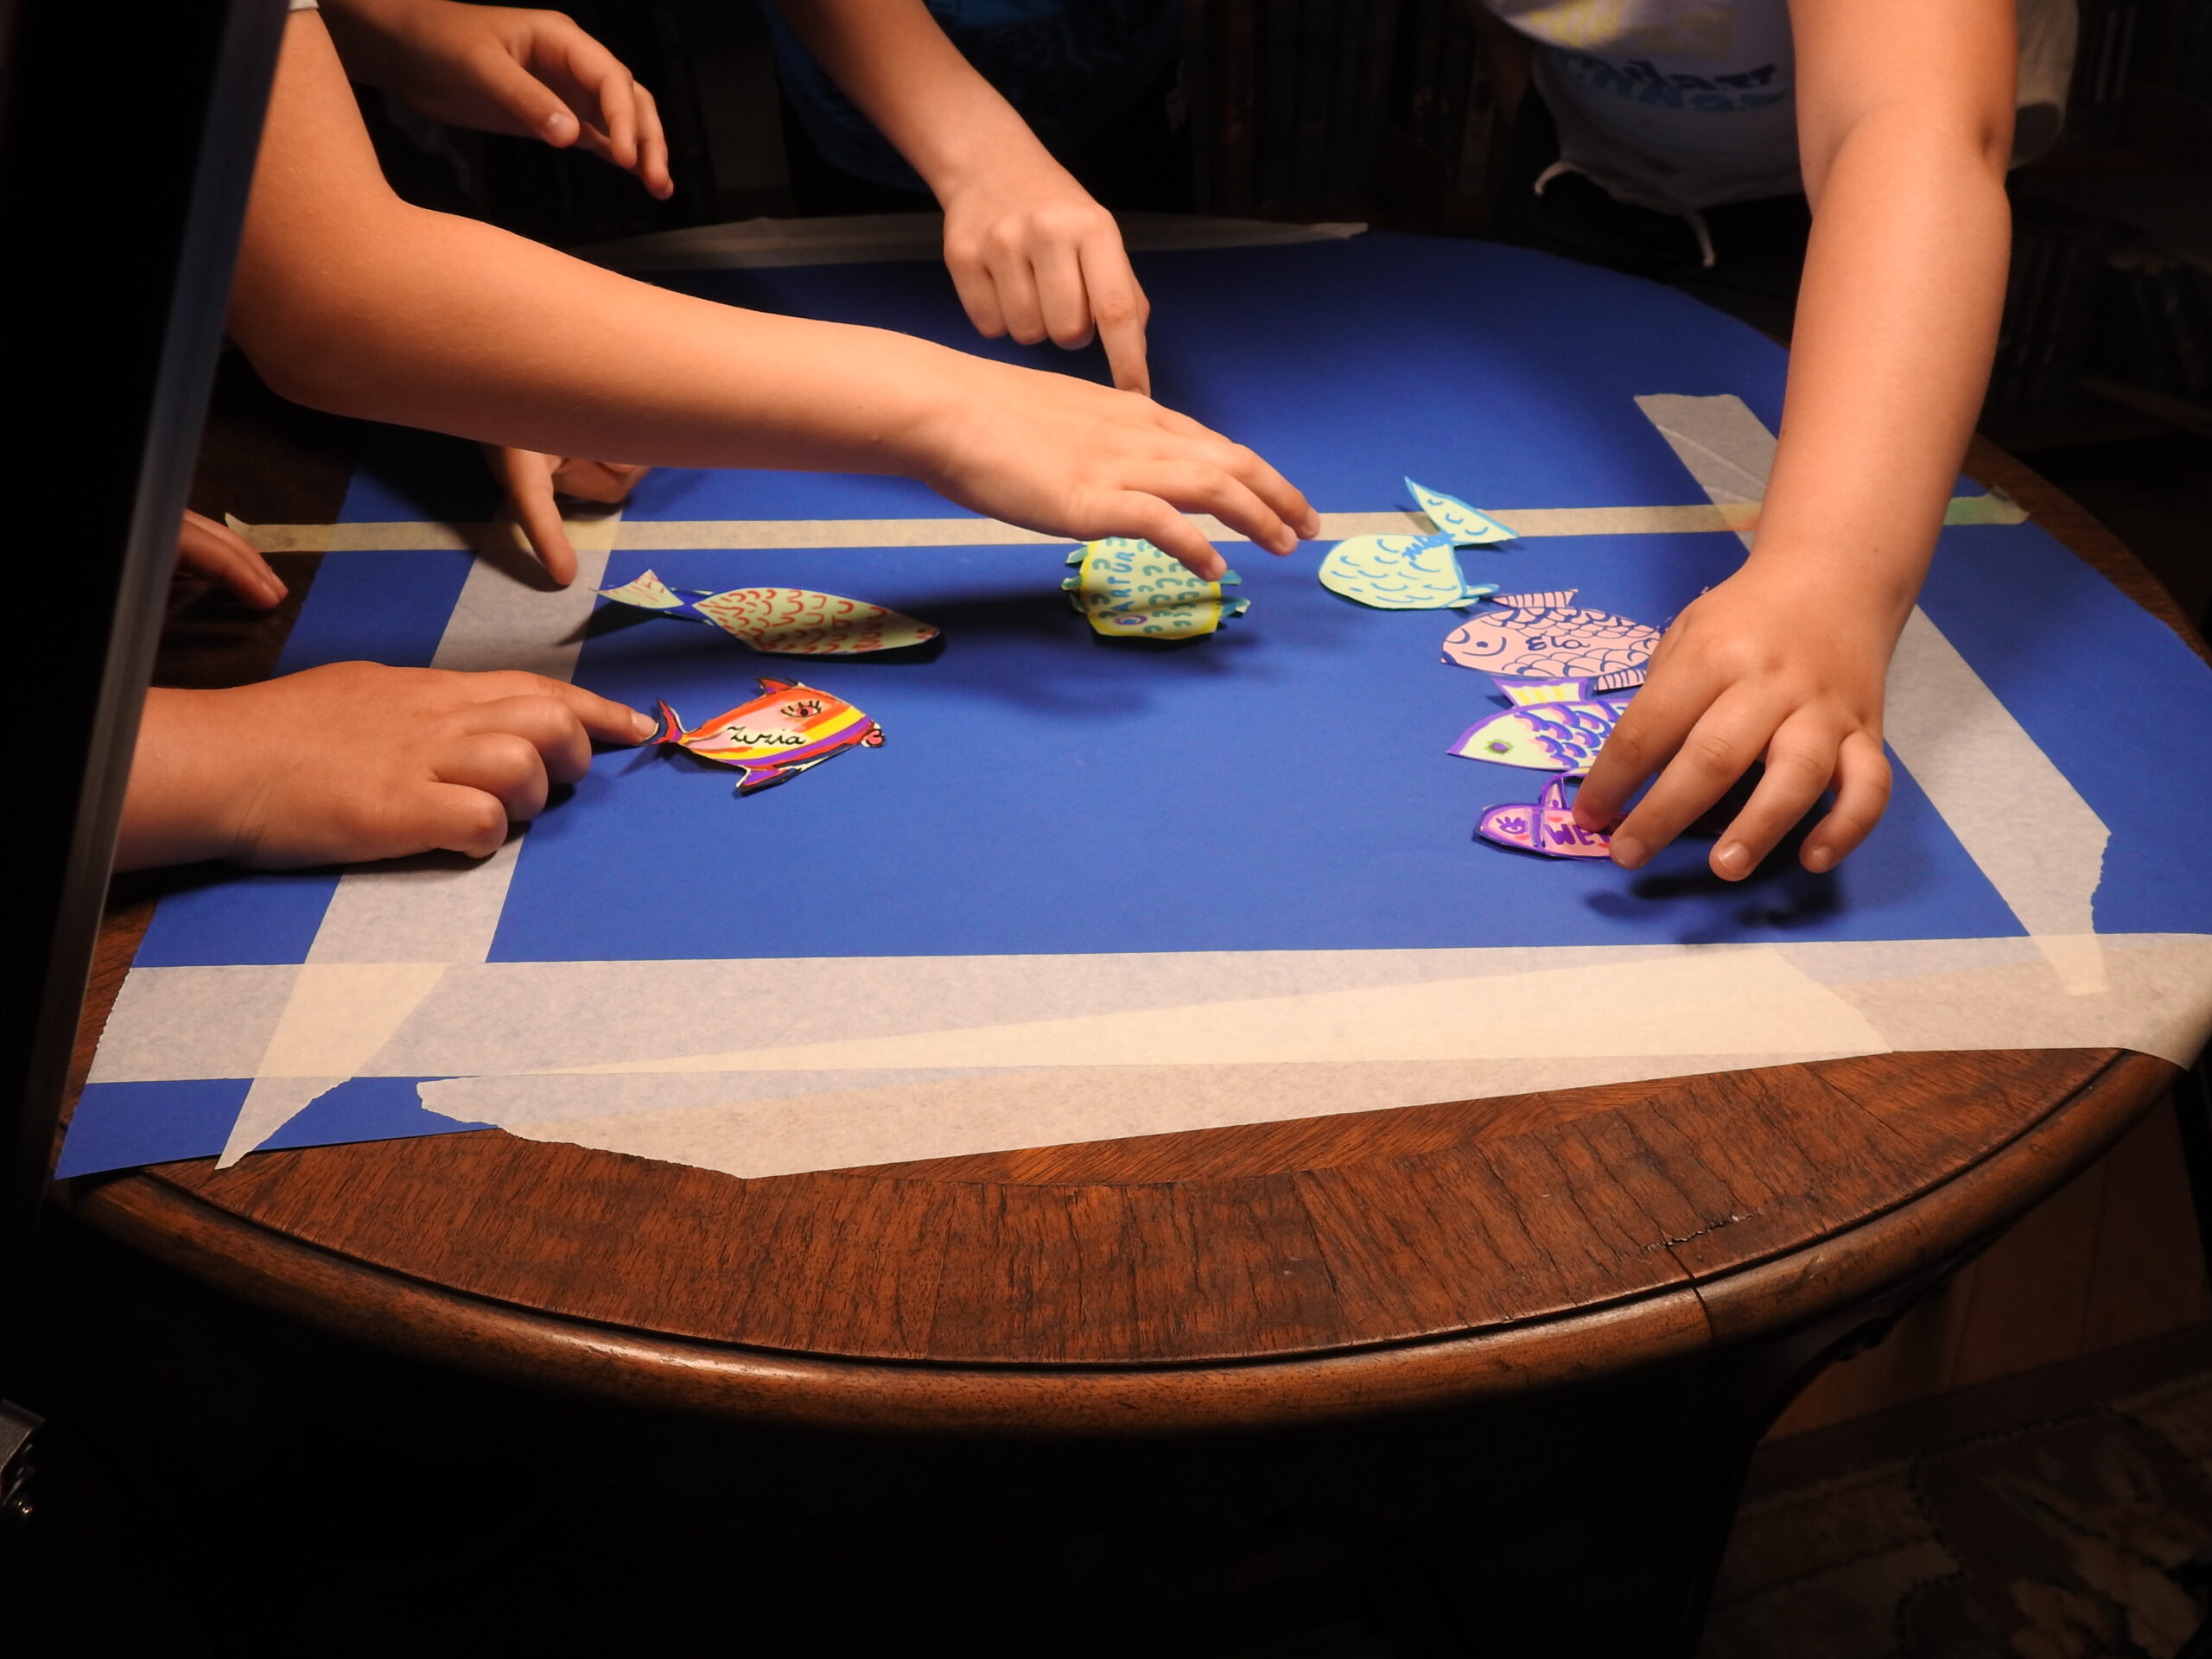 Na stoliku leży niebieski arkusz papieru z wyznaczonym białą taśmą prostokątem. Ręce układają kolorowe rybki na tym prostokącie.